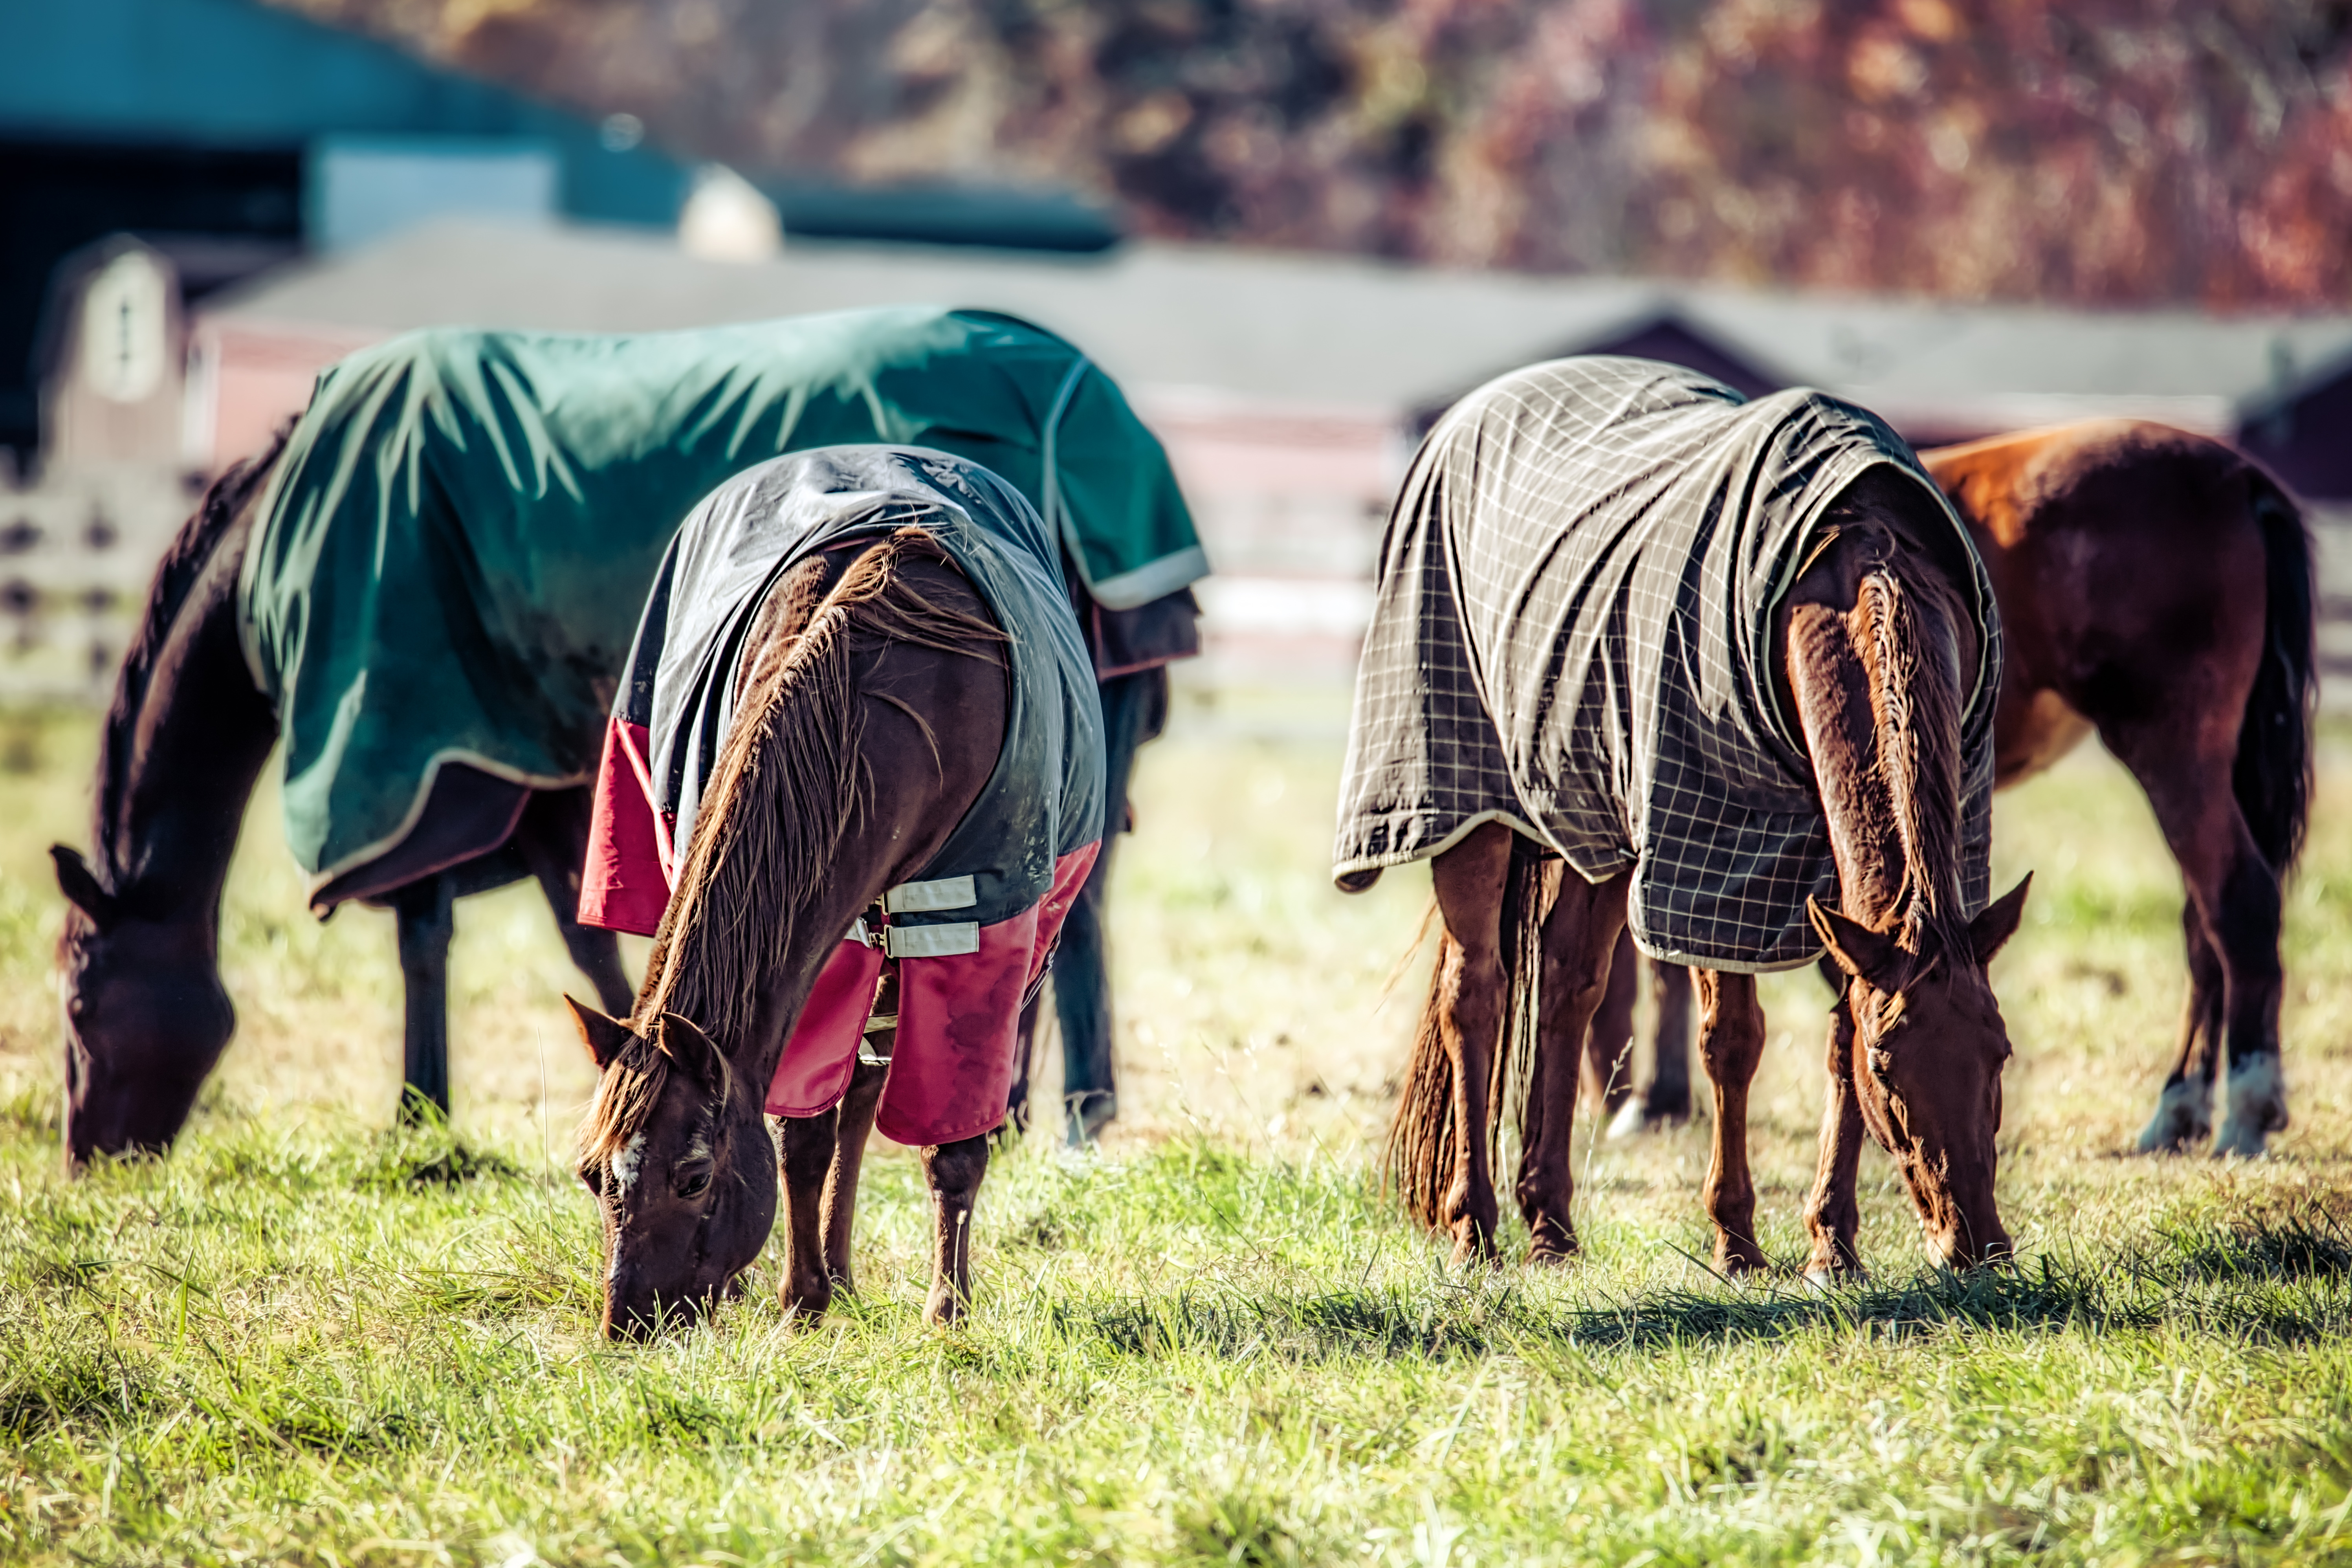 Horses in a field wearing blankets.